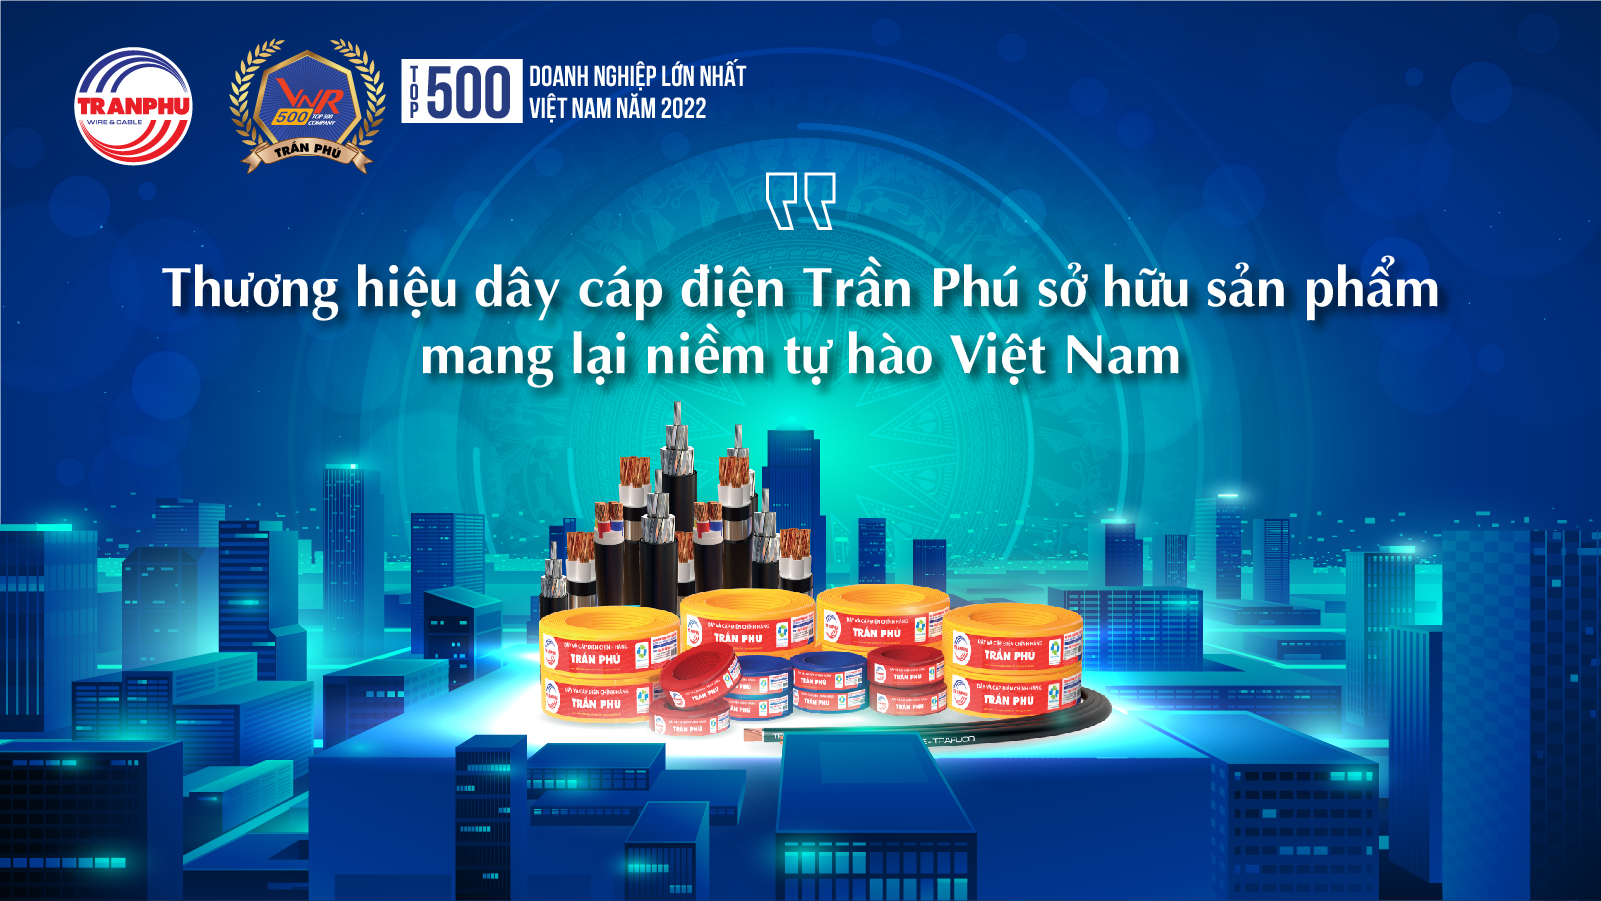 Thương hiệu dây cáp điện Trần Phú sở hữu sản phẩm mang lại niềm tự hào Việt Nam